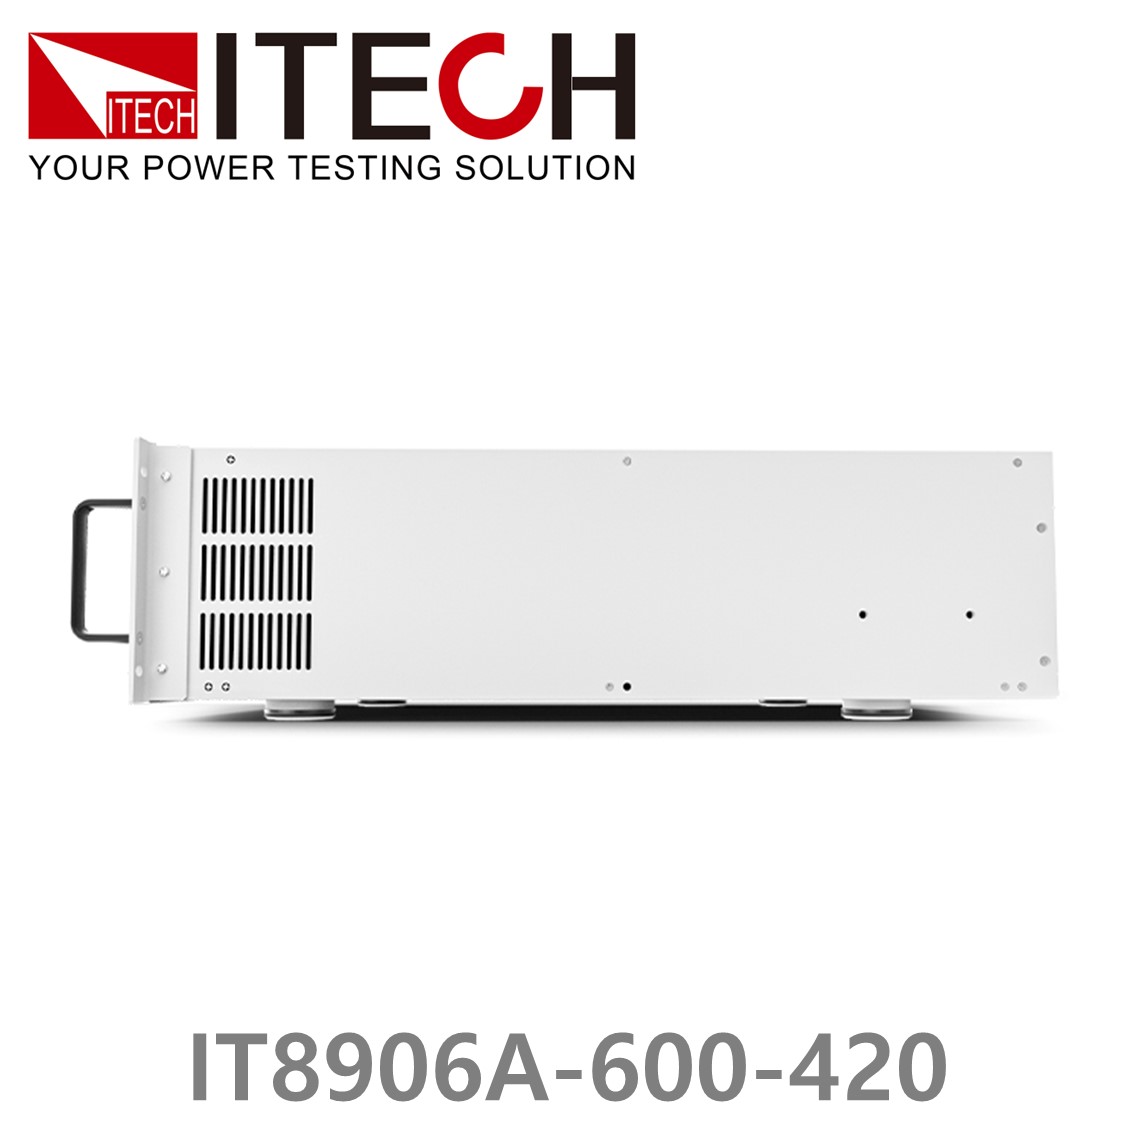 [ ITECH ] IT8906A-600-420  고성능 고전력 DC 전자로드 600V/420A/6kW (4U)